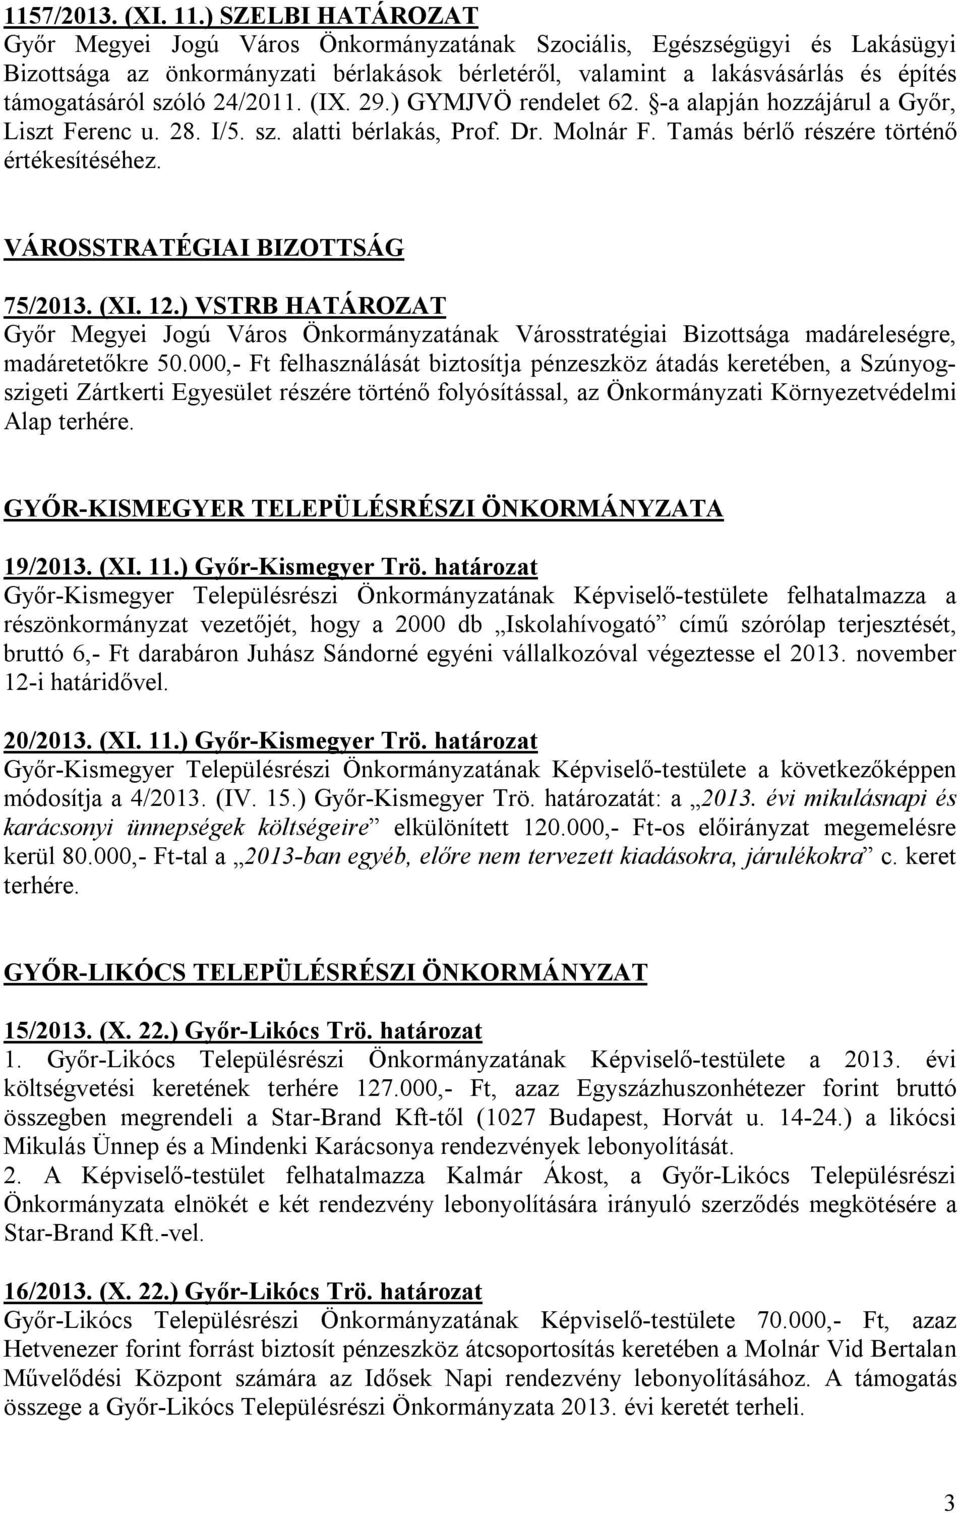 szóló 24/2011. (IX. 29.) GYMJVÖ rendelet 62. -a alapján hozzájárul a Győr, Liszt Ferenc u. 28. I/5. sz. alatti bérlakás, Prof. Dr. Molnár F. Tamás bérlő részére történő értékesítéséhez.